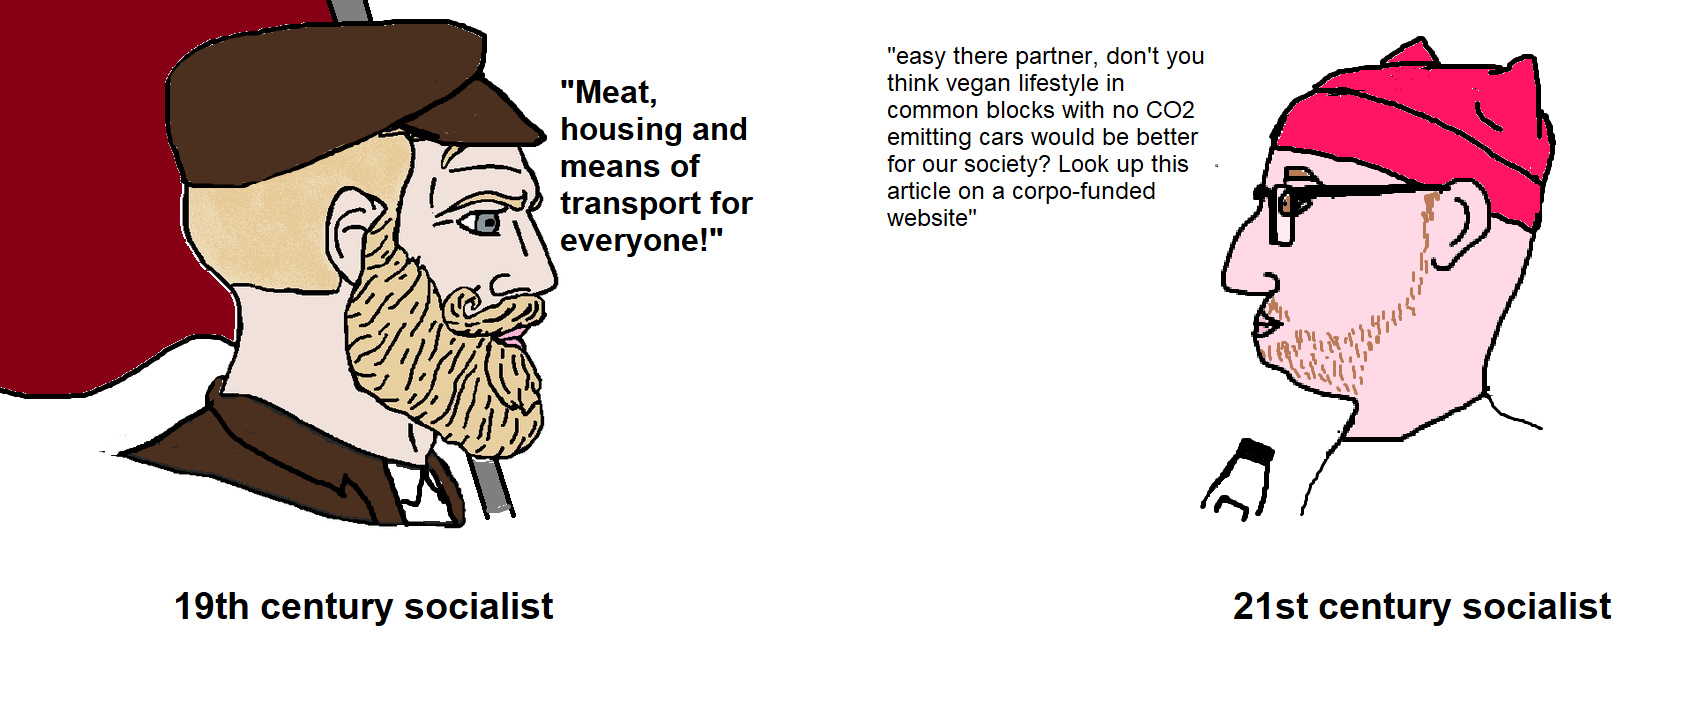 dongs in a socialist - meme